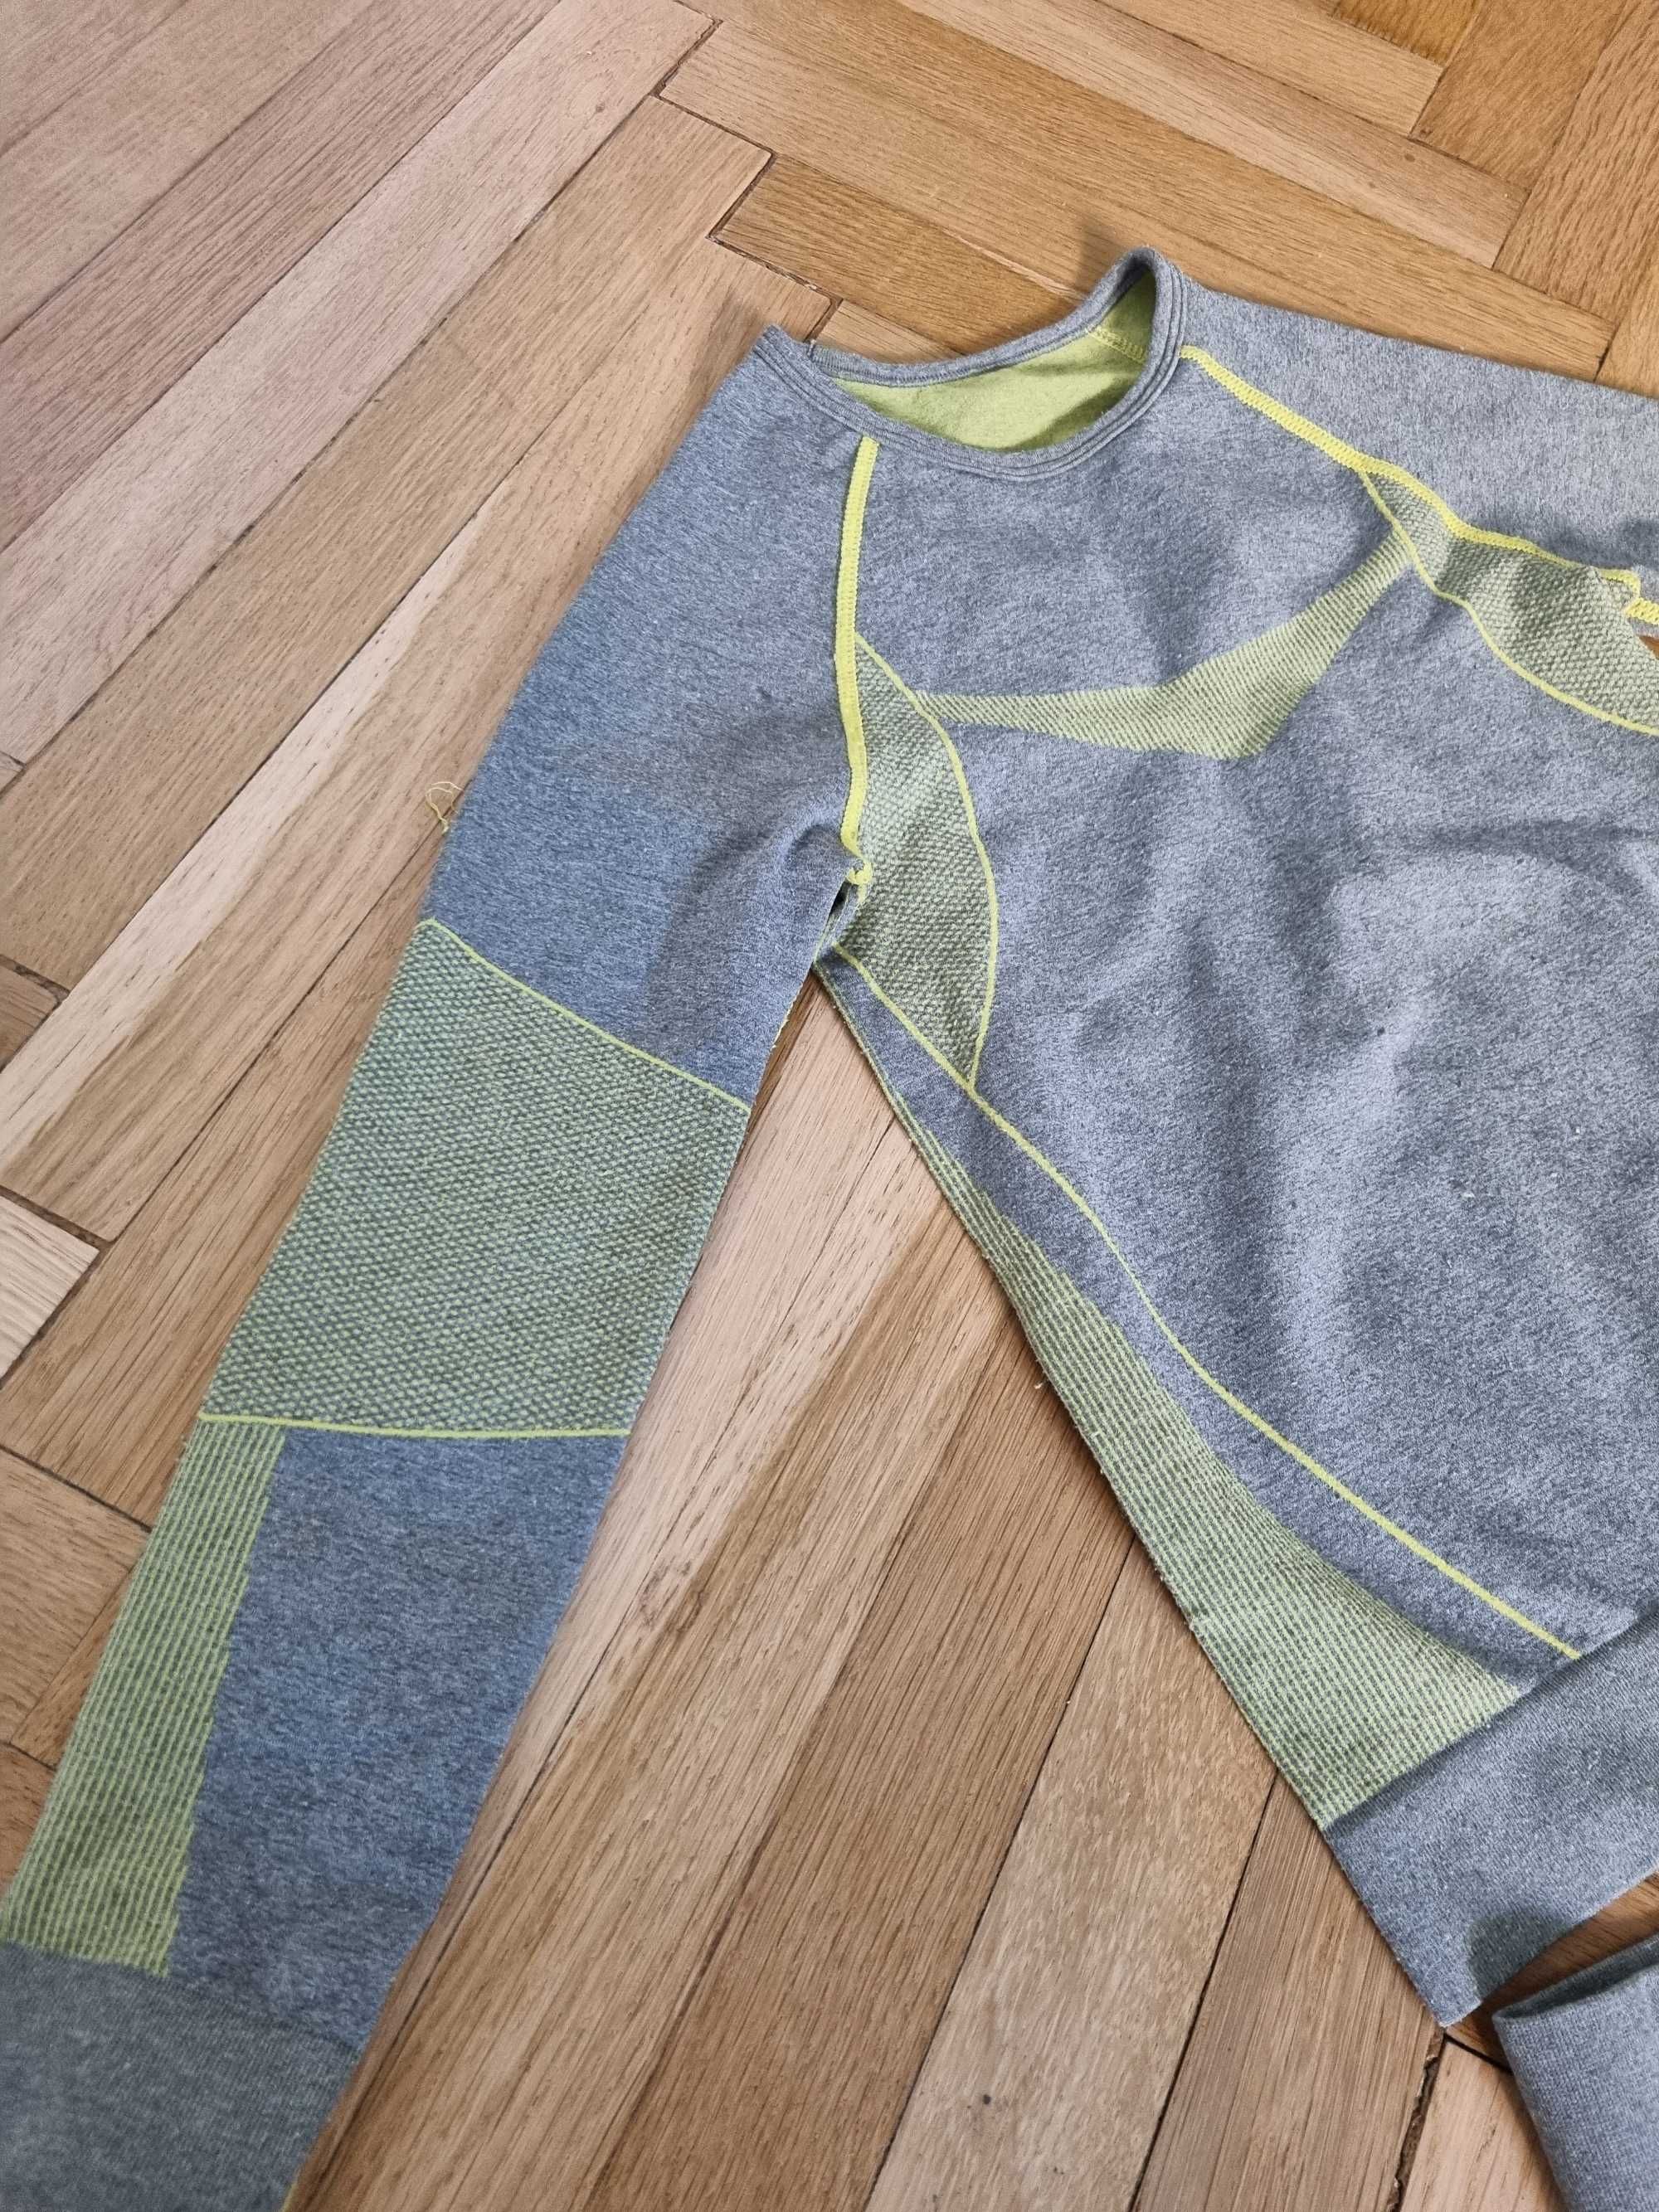 Ubranie termiczne/do sportów (bluzka + legginsy) dla dziecka